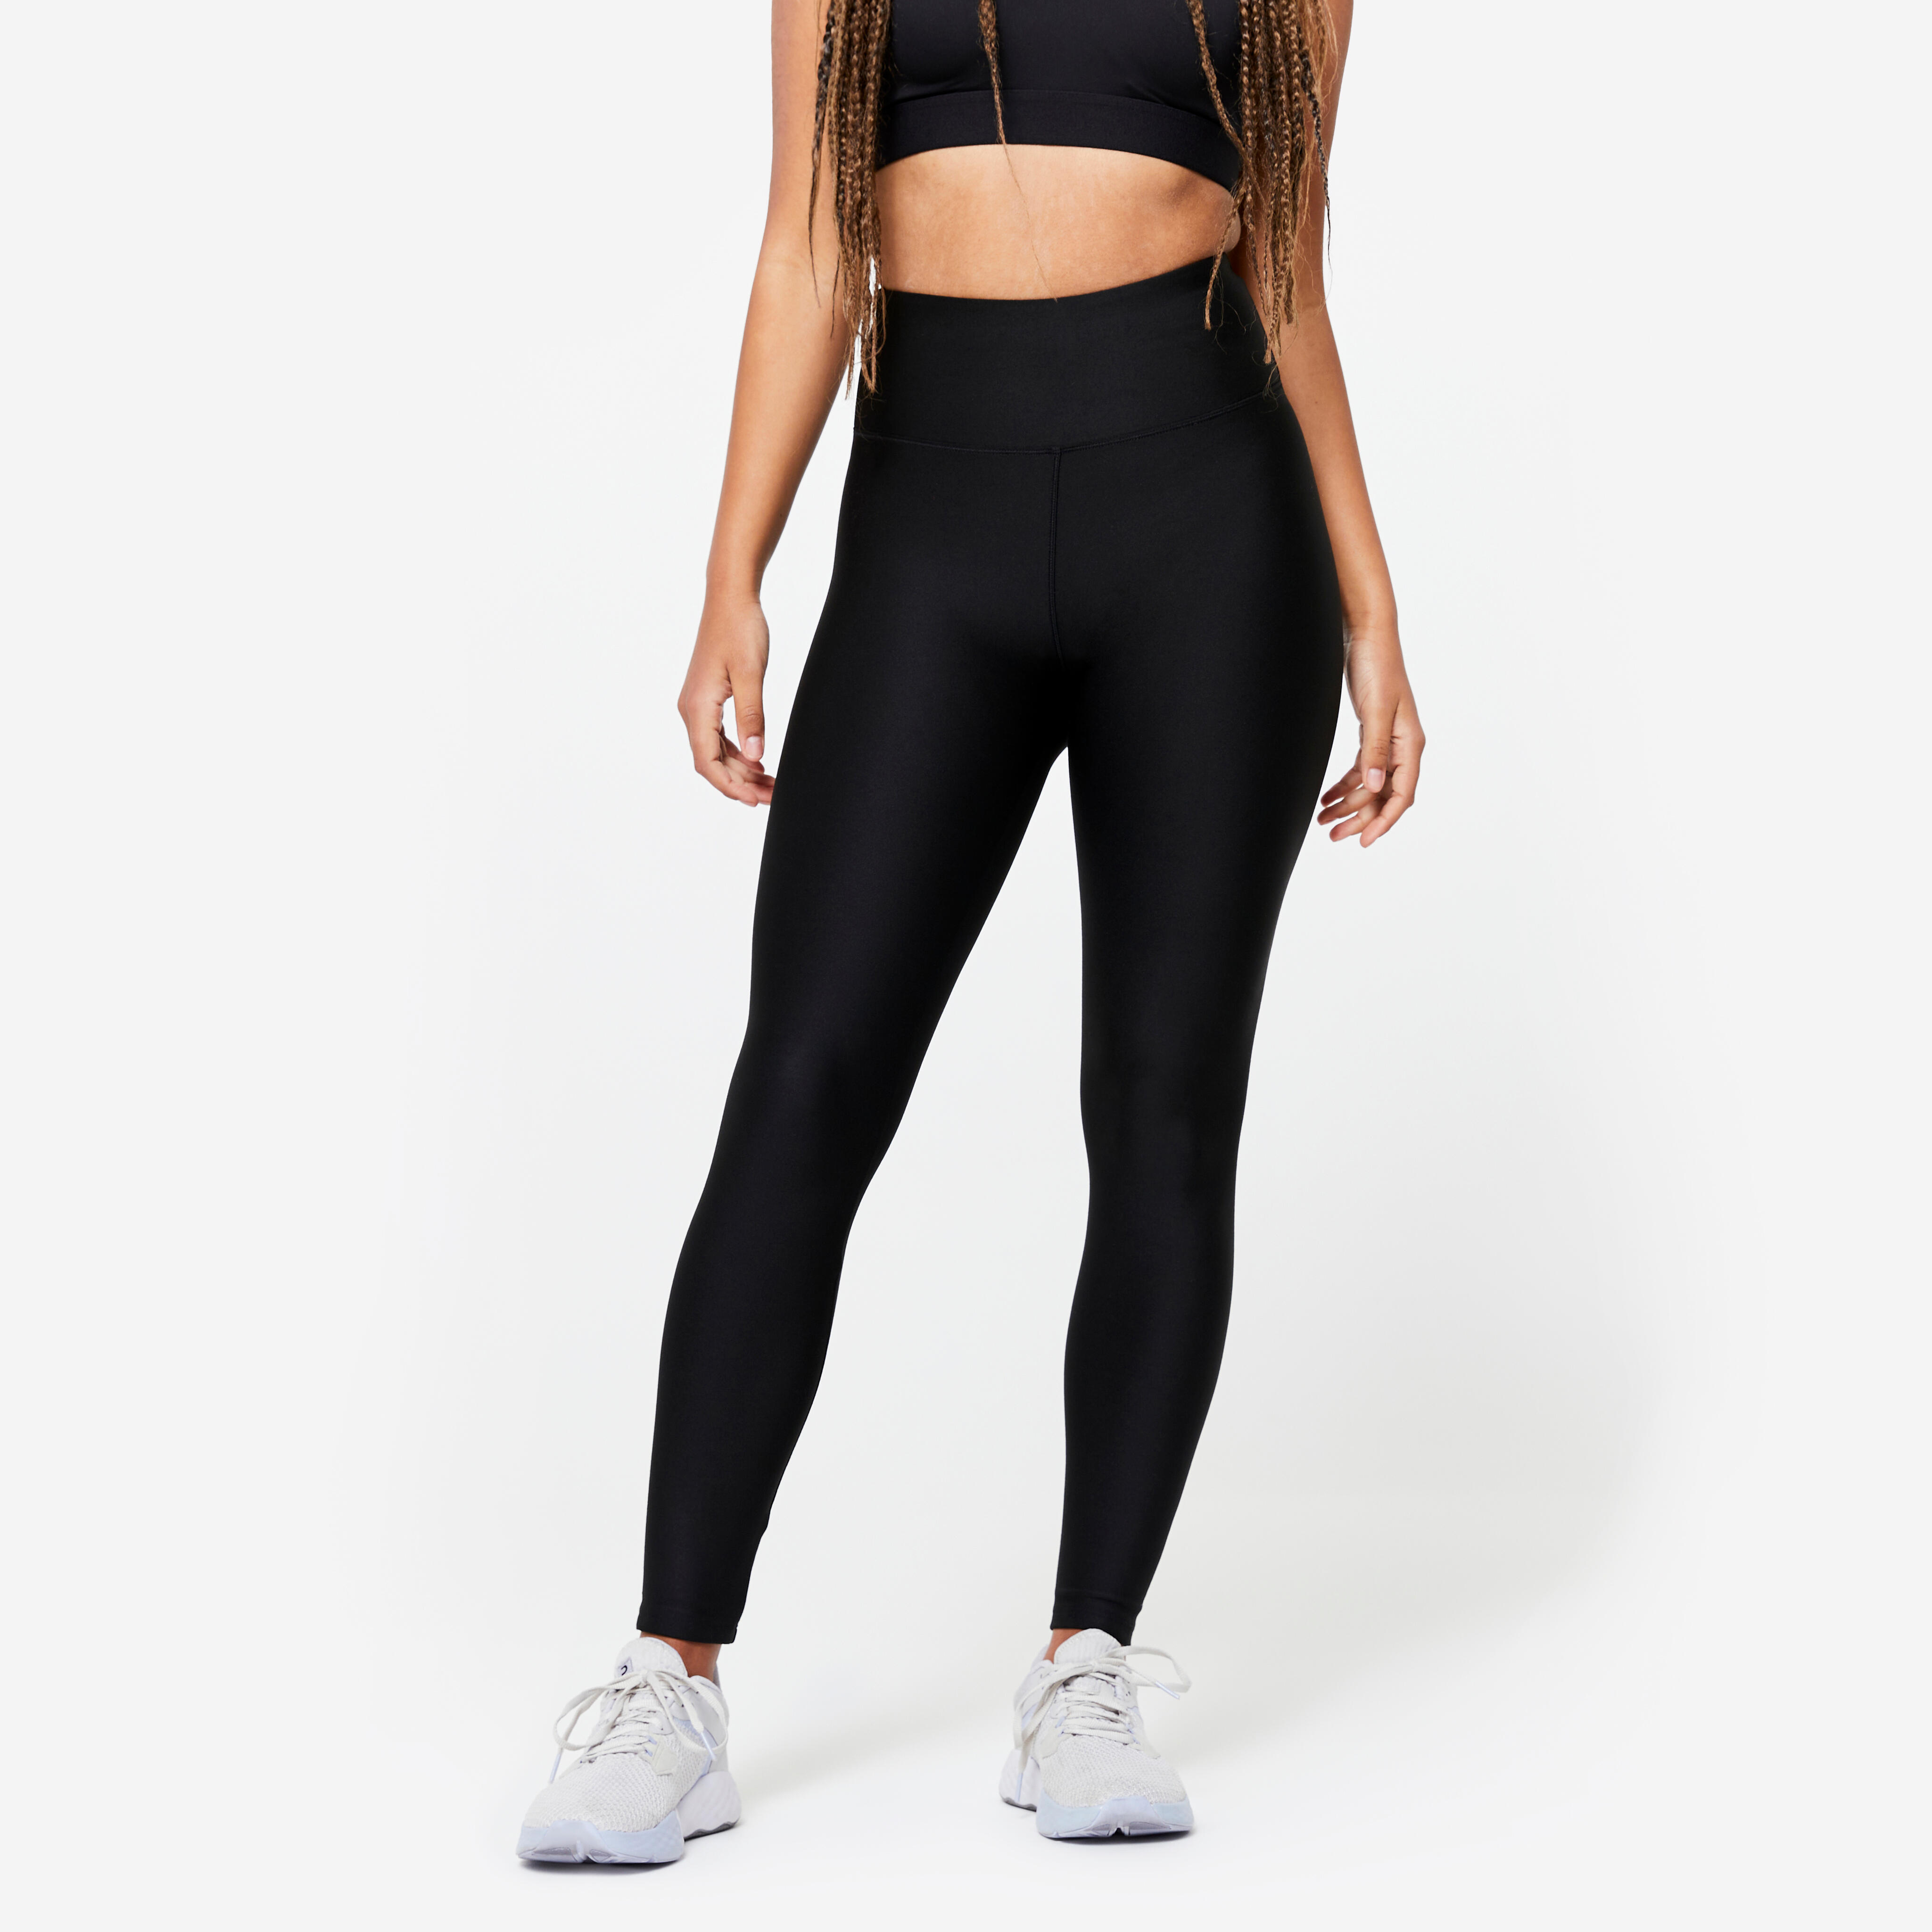 Women’s Fitness High-Waisted Leggings – FTI 100 Black